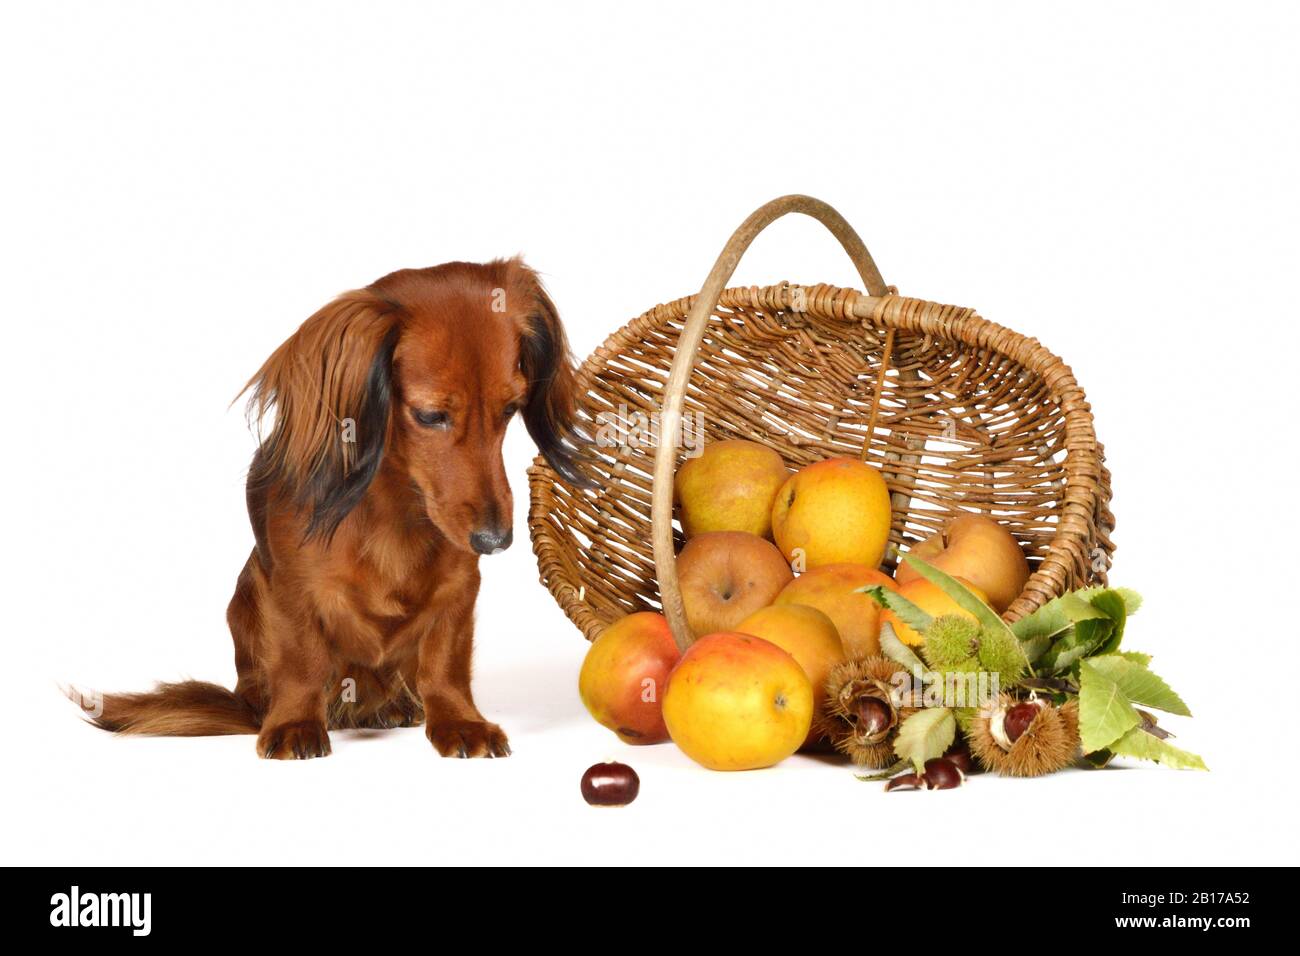 Langhaariger Dachshund, Langhaariger Wursthund, Haushund (Canis lupus f. familiaris), weiblicher Hund, der fluchtartig auf eine marone vor einem apfelkorb blickt Stockfoto